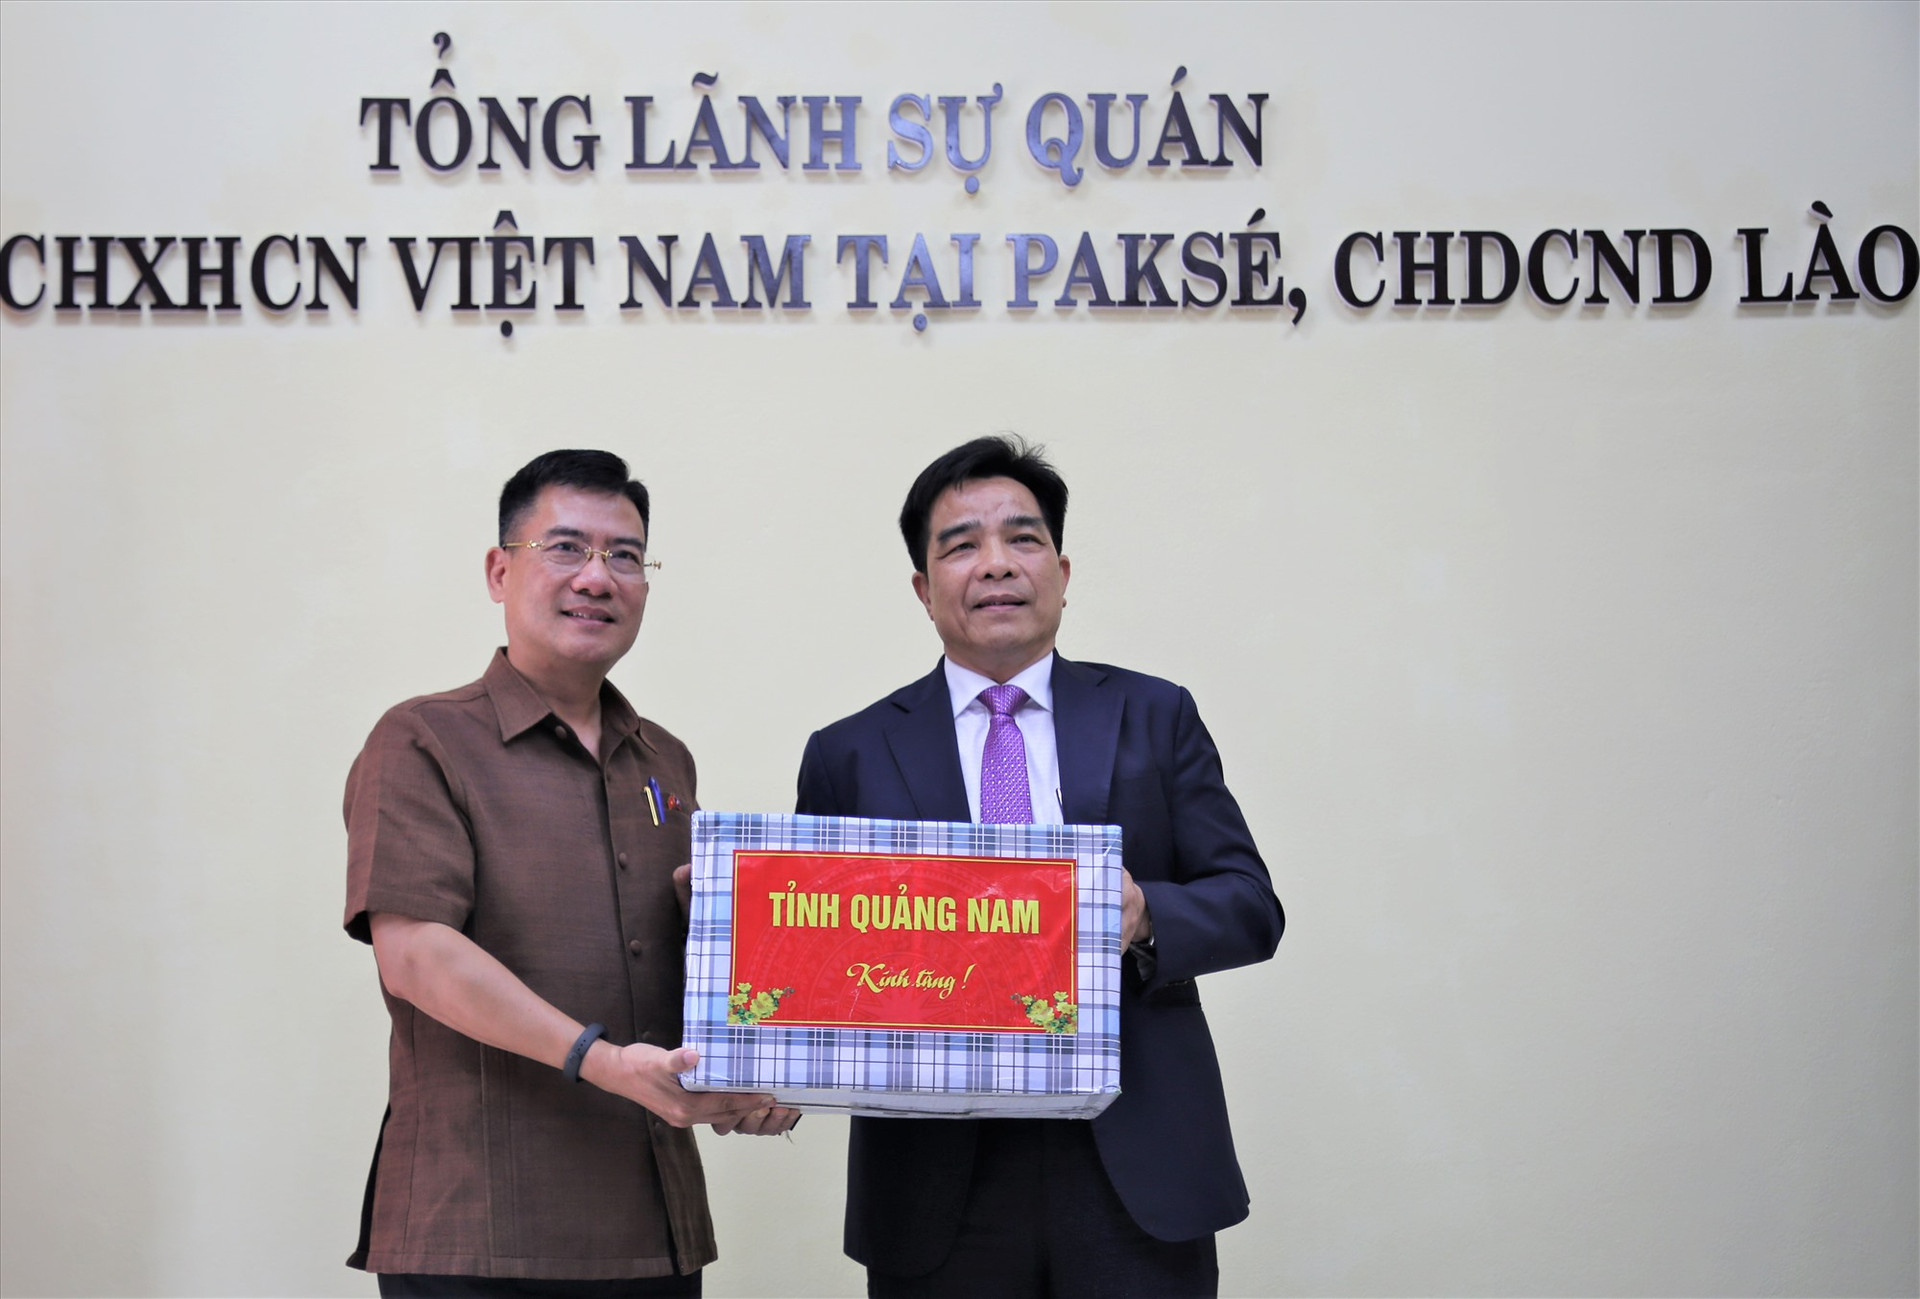 Đồng chí Lê Văn Dũng trao quà động viên cán bộ, nhân viên Tổng Lãnh sự quán Việt Nam tại Păk Sế. Ảnh: A.N